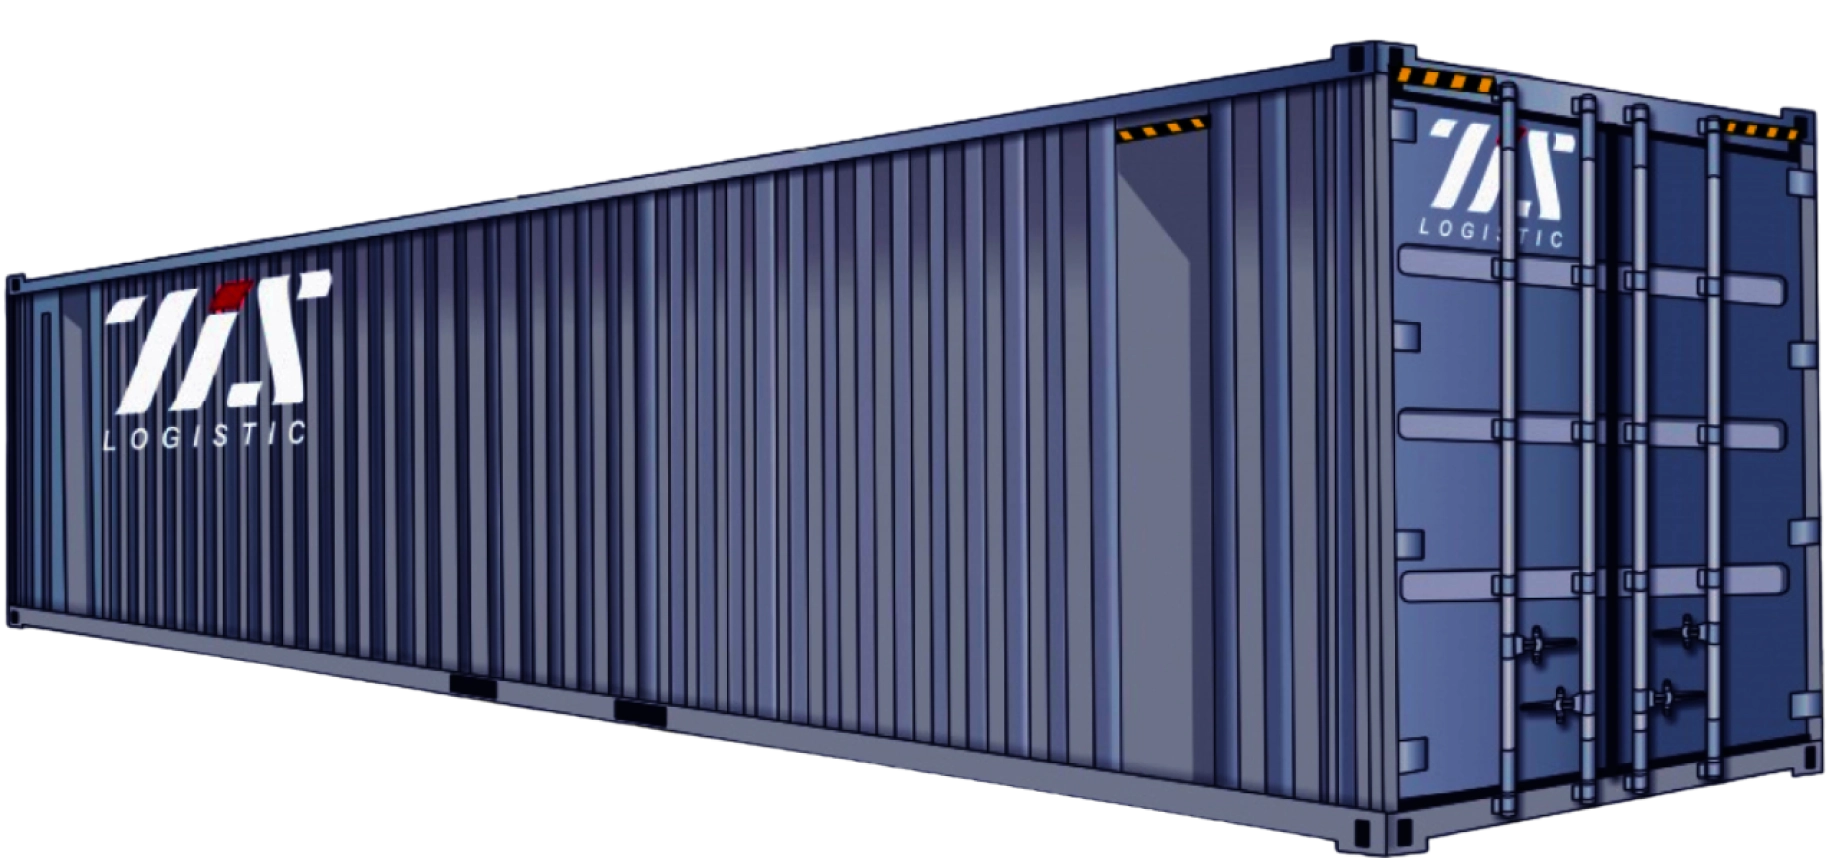 40-ка футовый High Cube рефрижераторный (стальной) контейнер (увеличенной вместимости) для грузоперевозок от ТИС Лоджистик